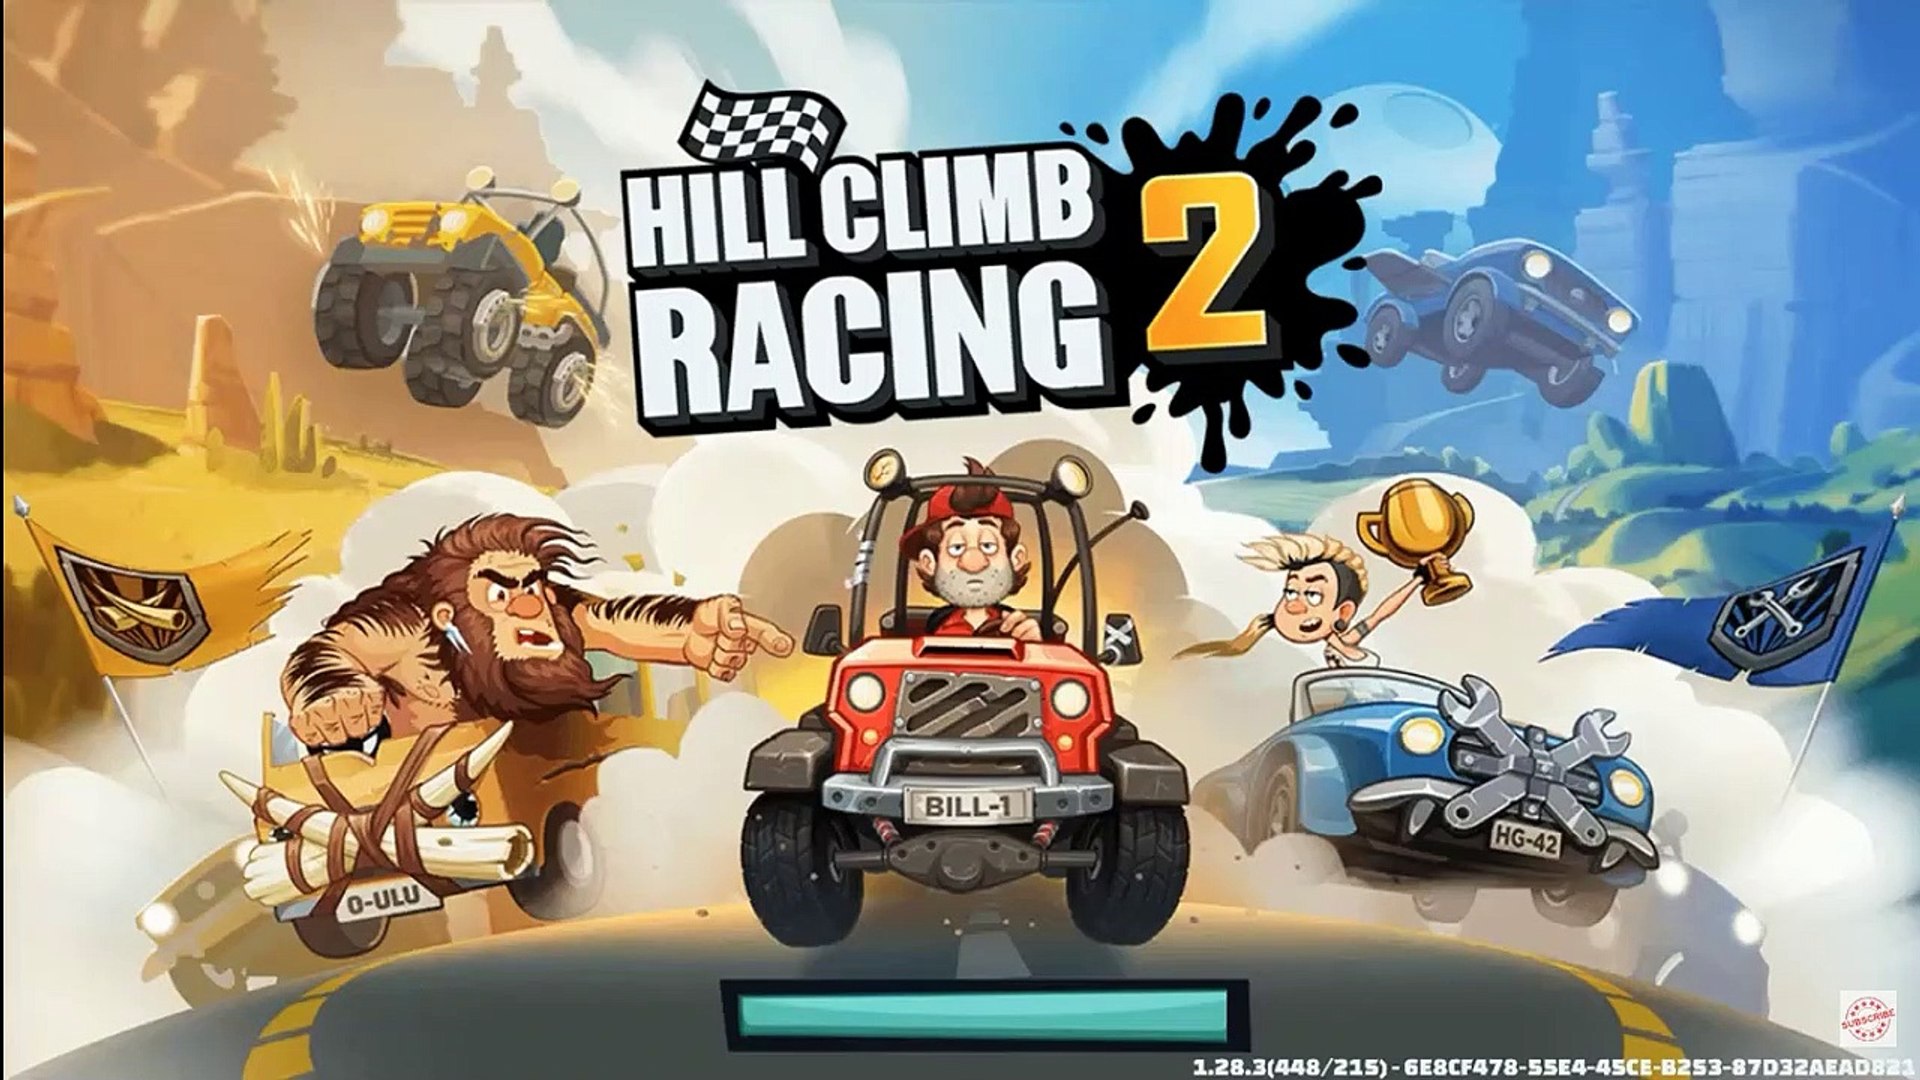 Hill Climb Racing Mod Apk Unlimited Money and Fuel IOS - Hill Climb Racing